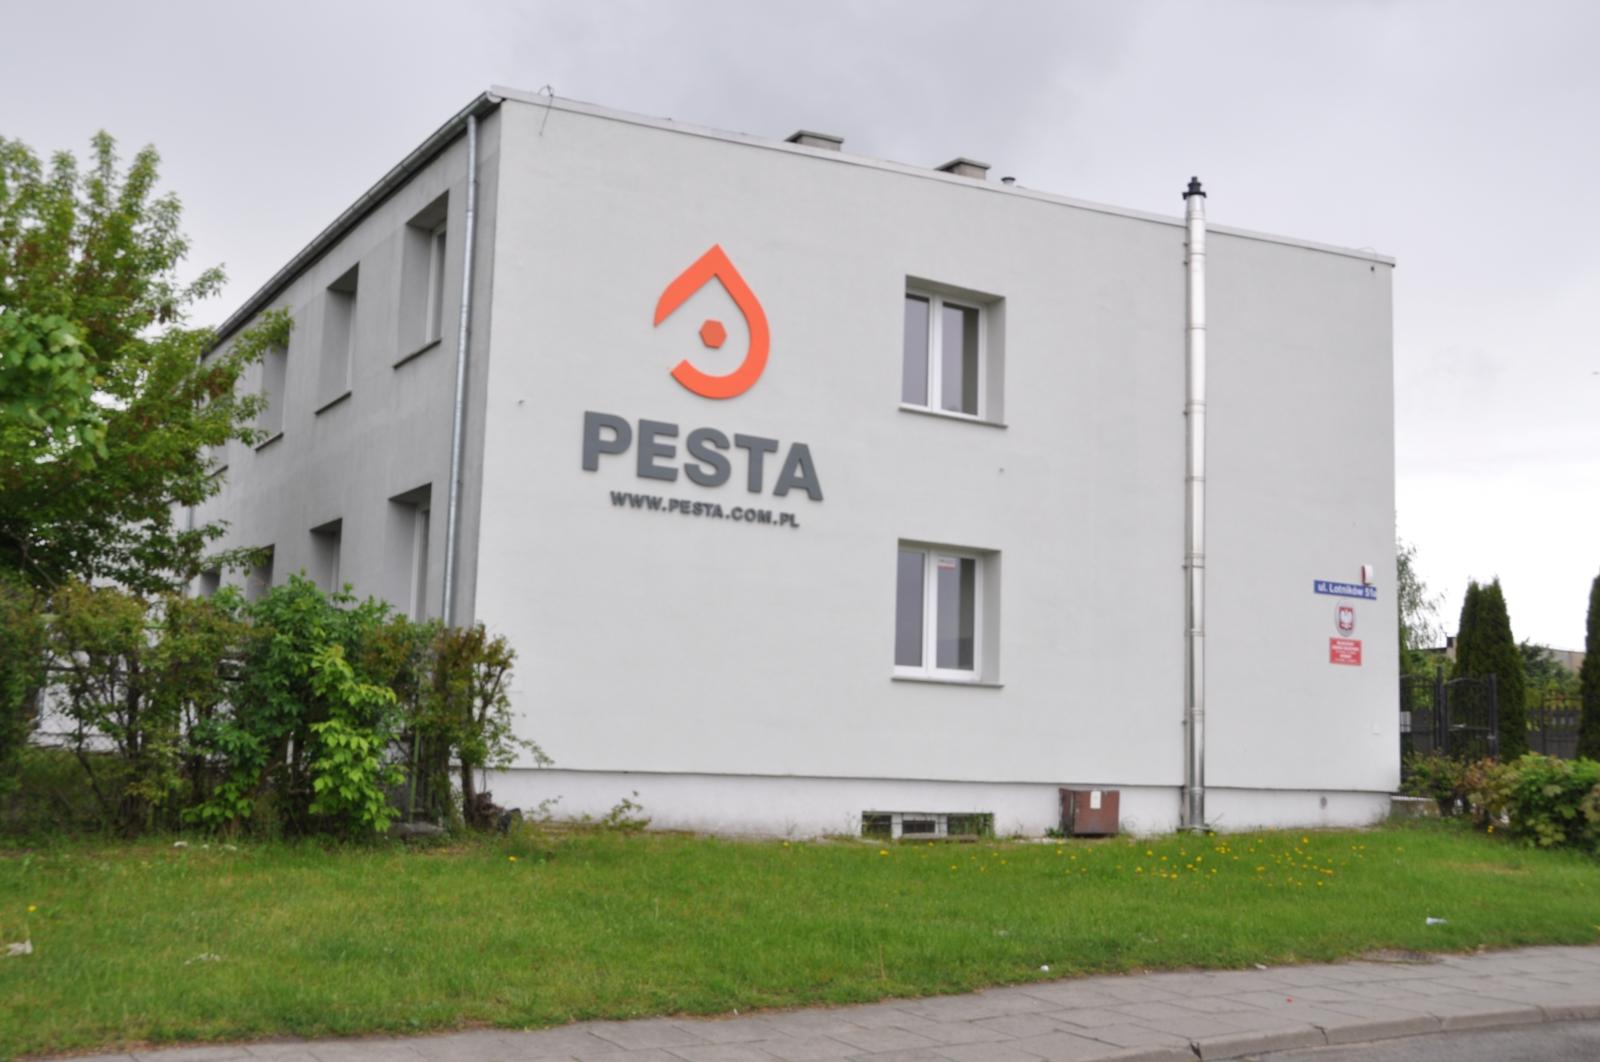 Zdjęcia obiektów PESTA2_9